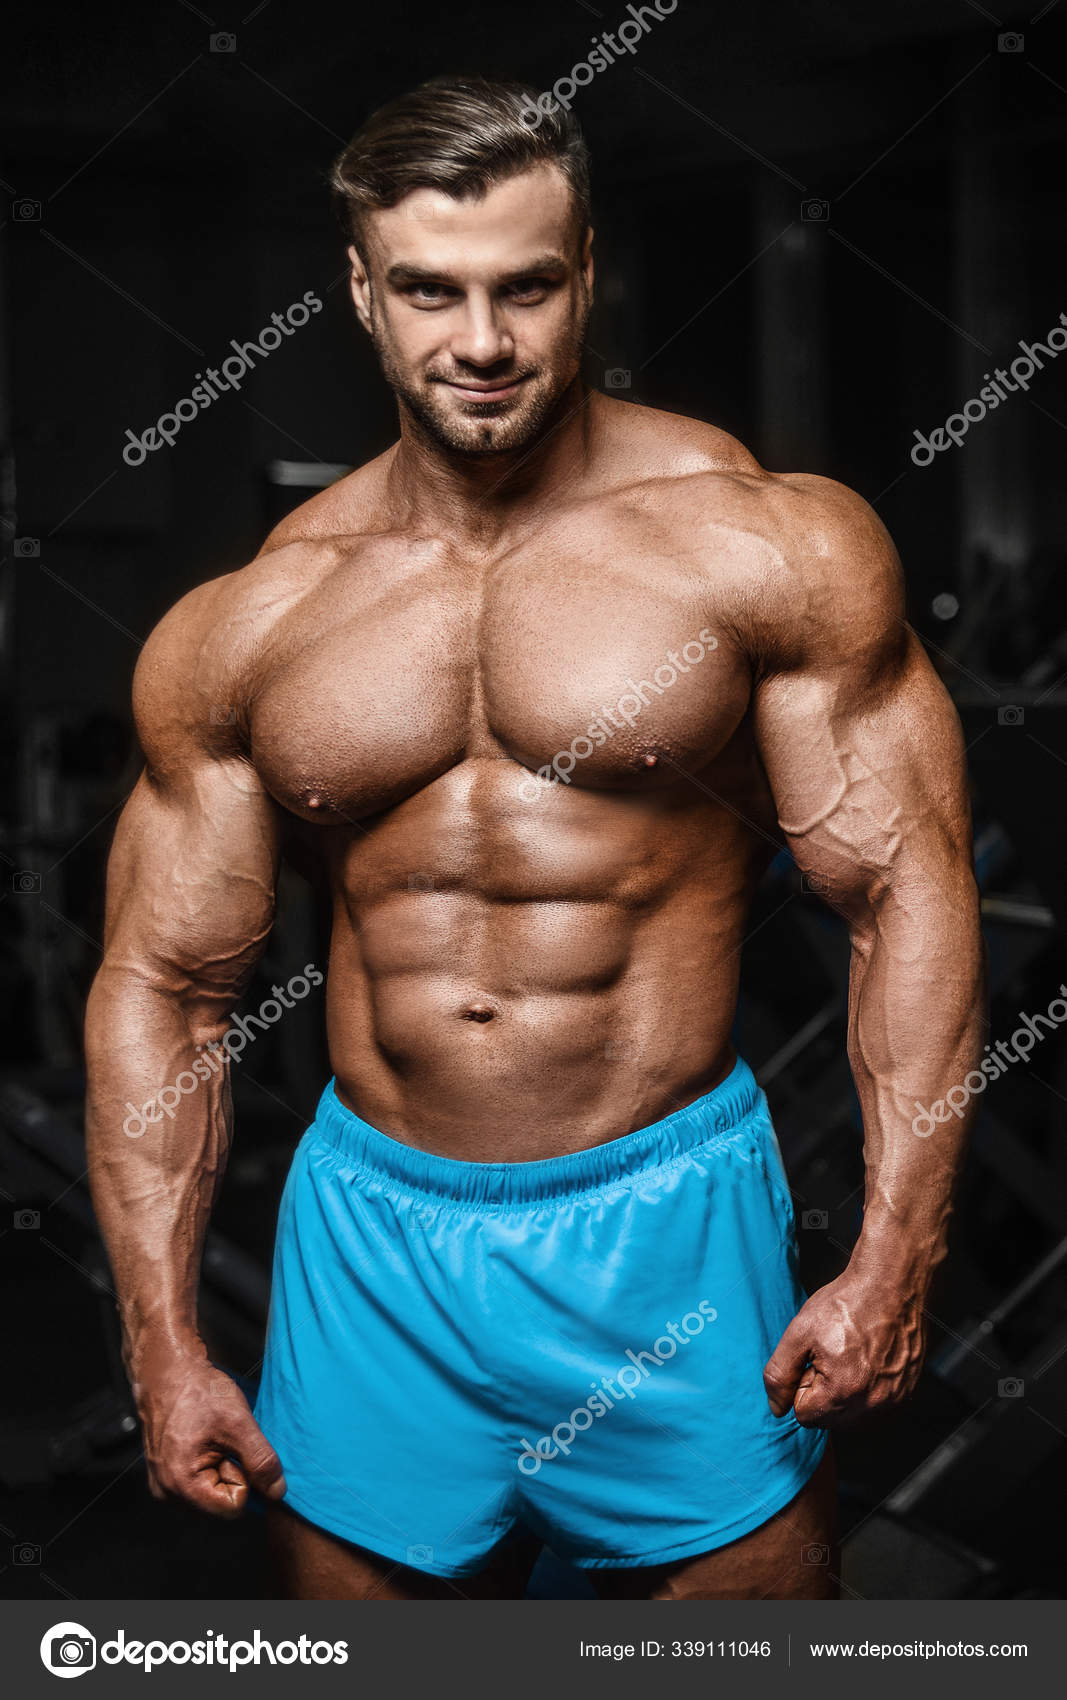 overschrijving leerboek West Good looking fitness man pumping up muscles Stock Photo by ©antondotsenko  339111046